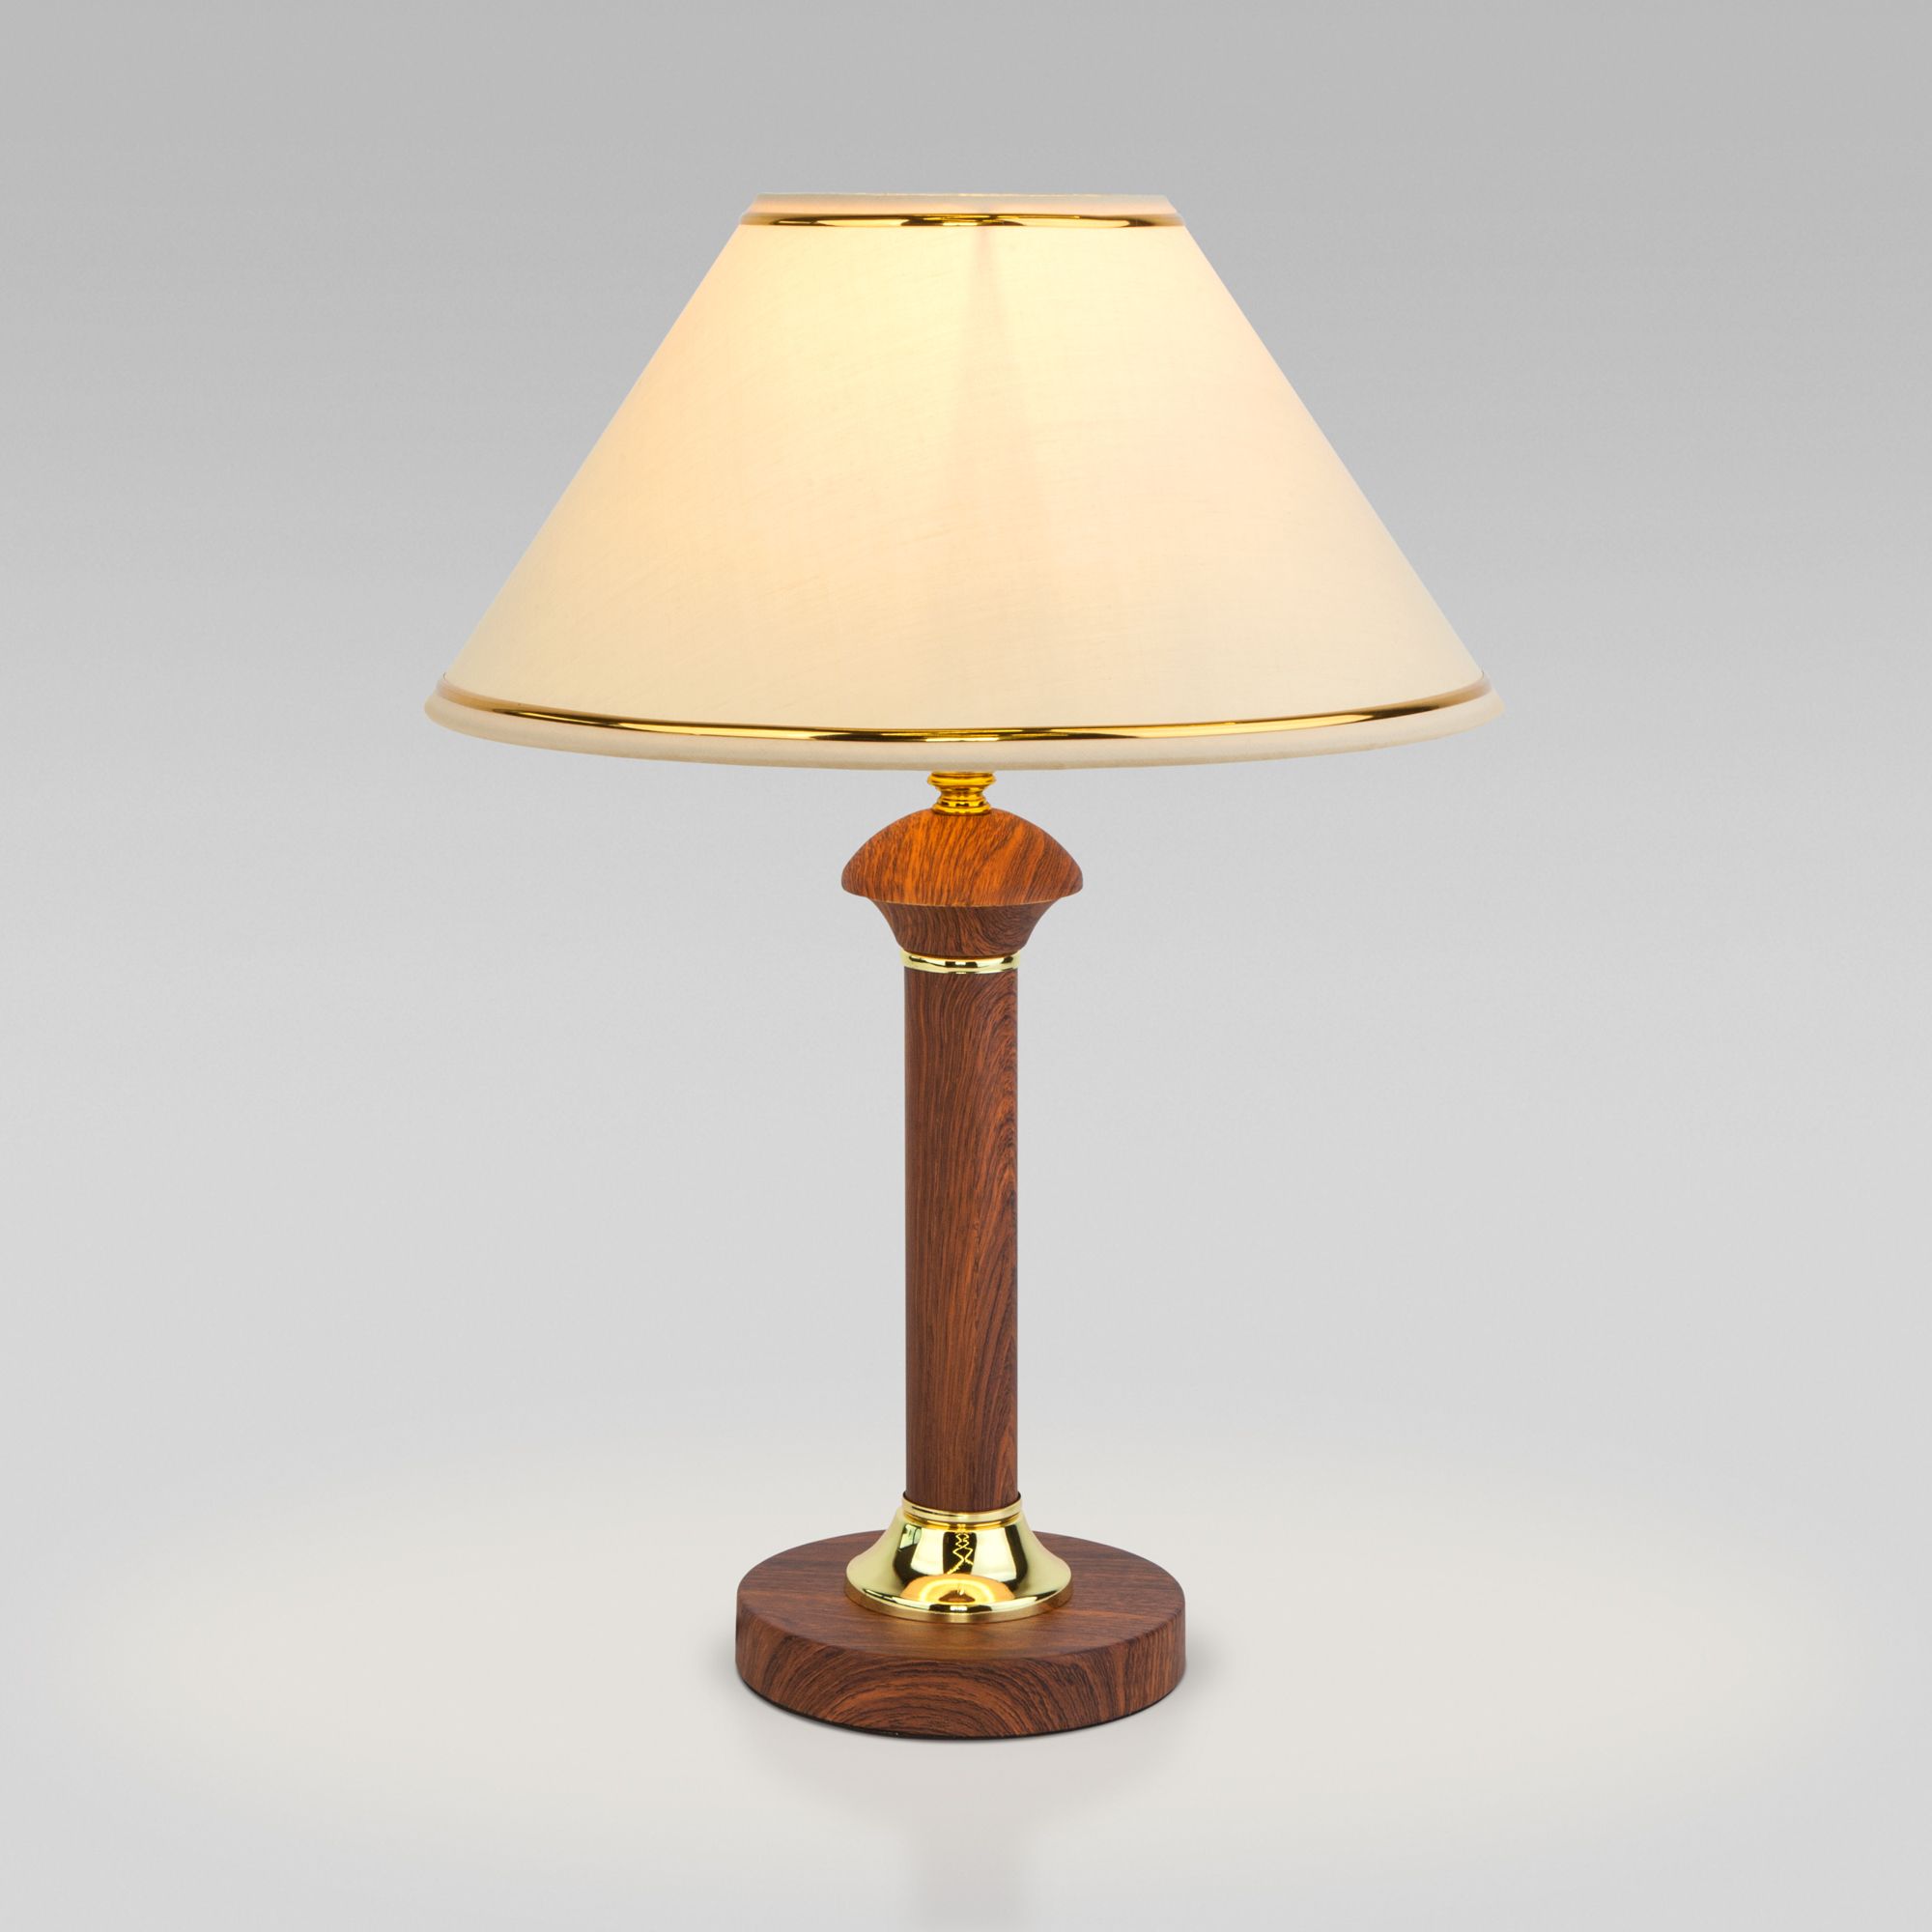 Настольный светильник с тканевым абажуром Eurosvet Lorenzo 60019/1 орех. Фото 1